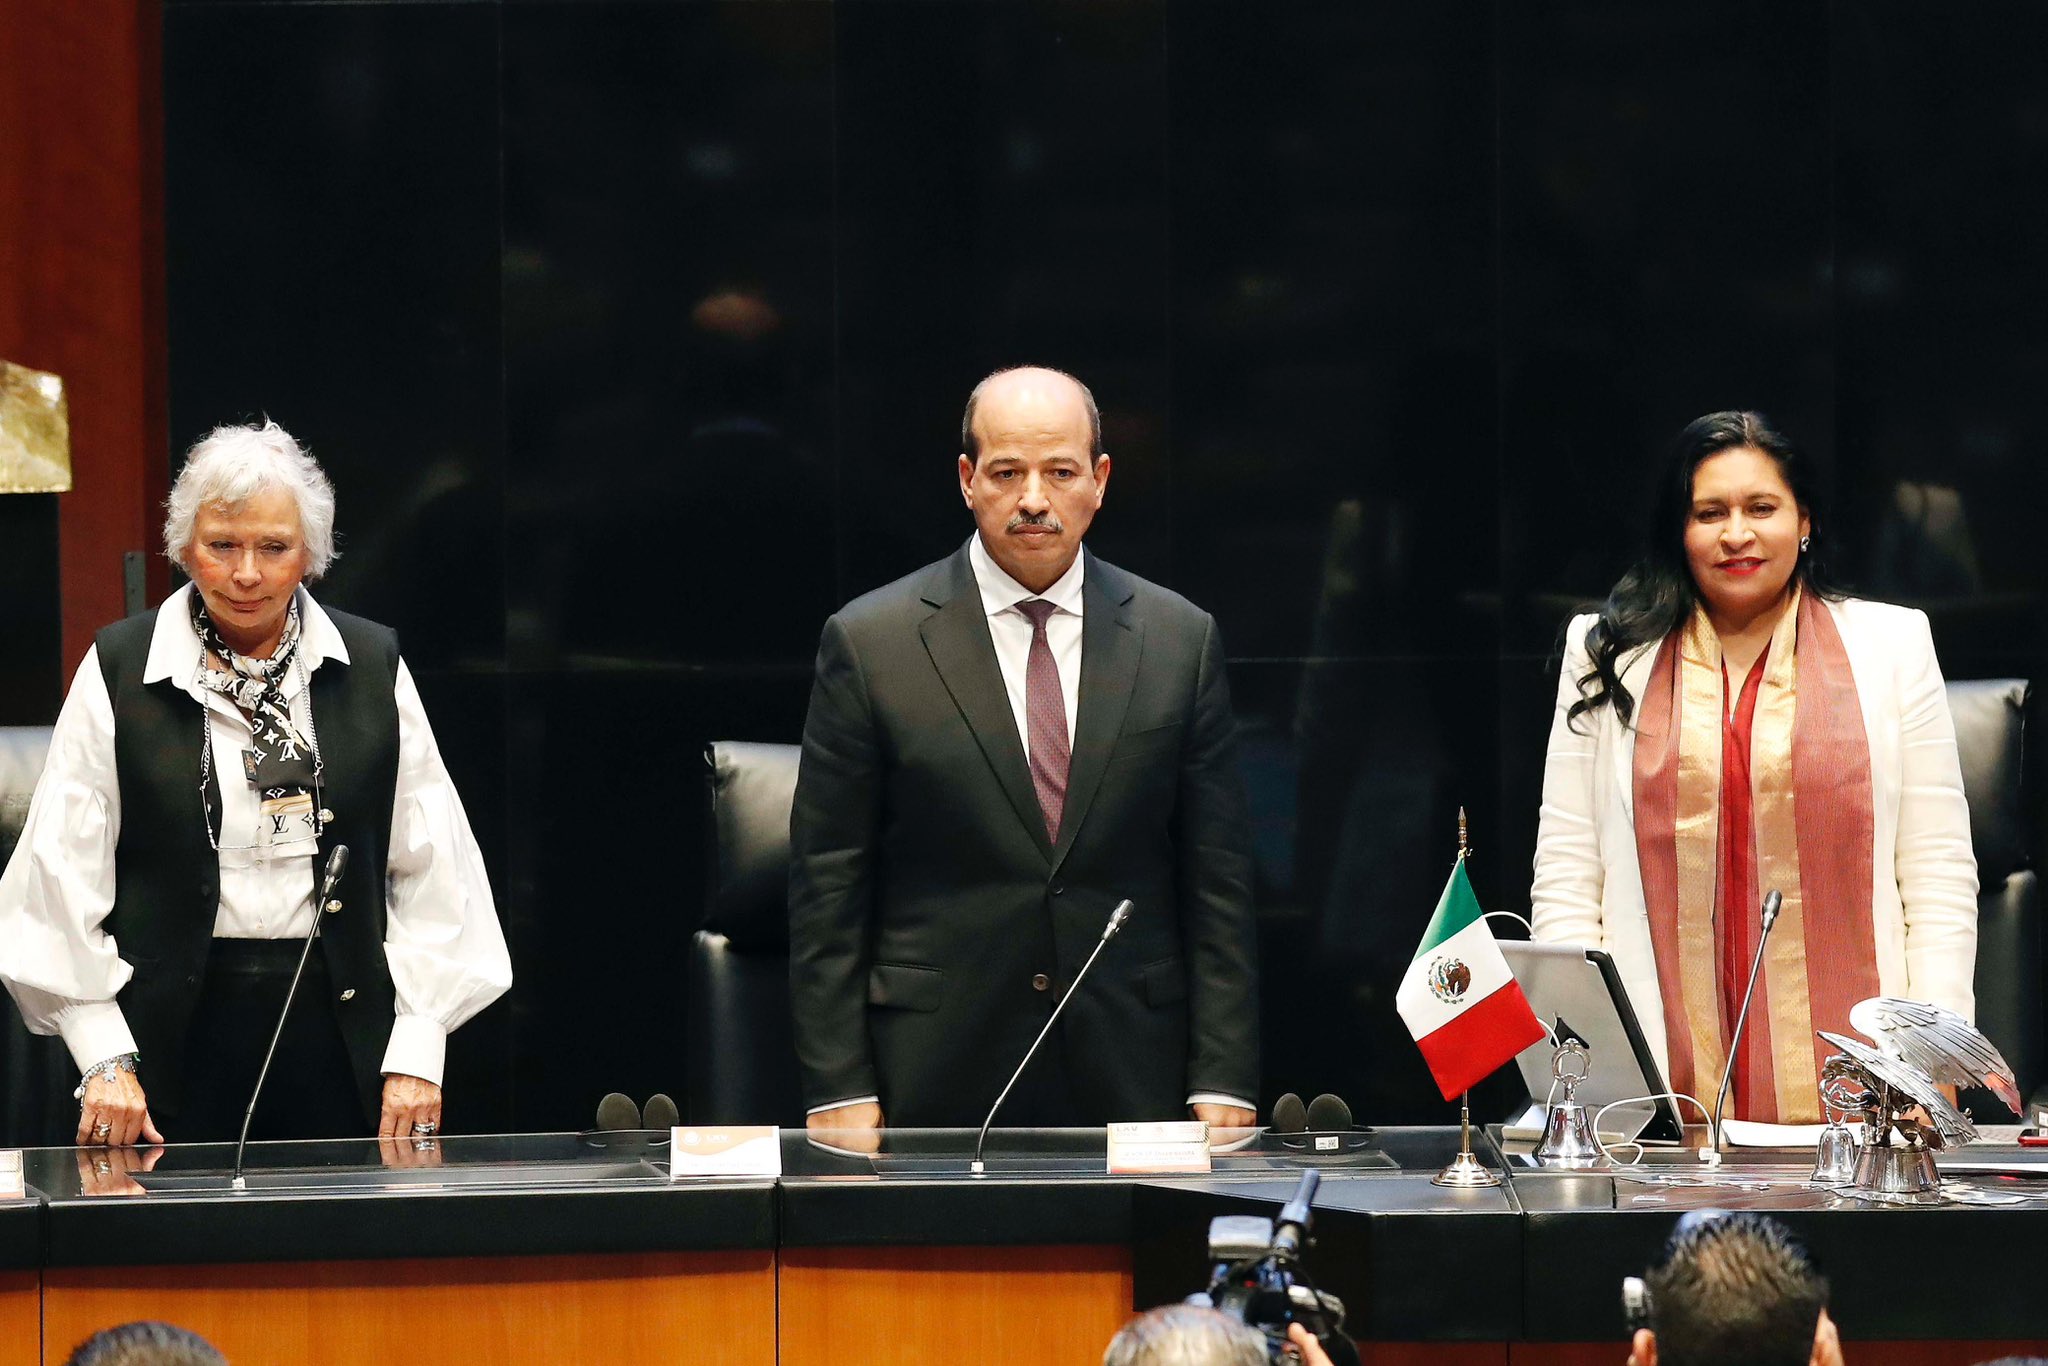 Enaam Mayara plaide pour une nouvelle dynamique dans les relations maroco-mexicaines au Sénat